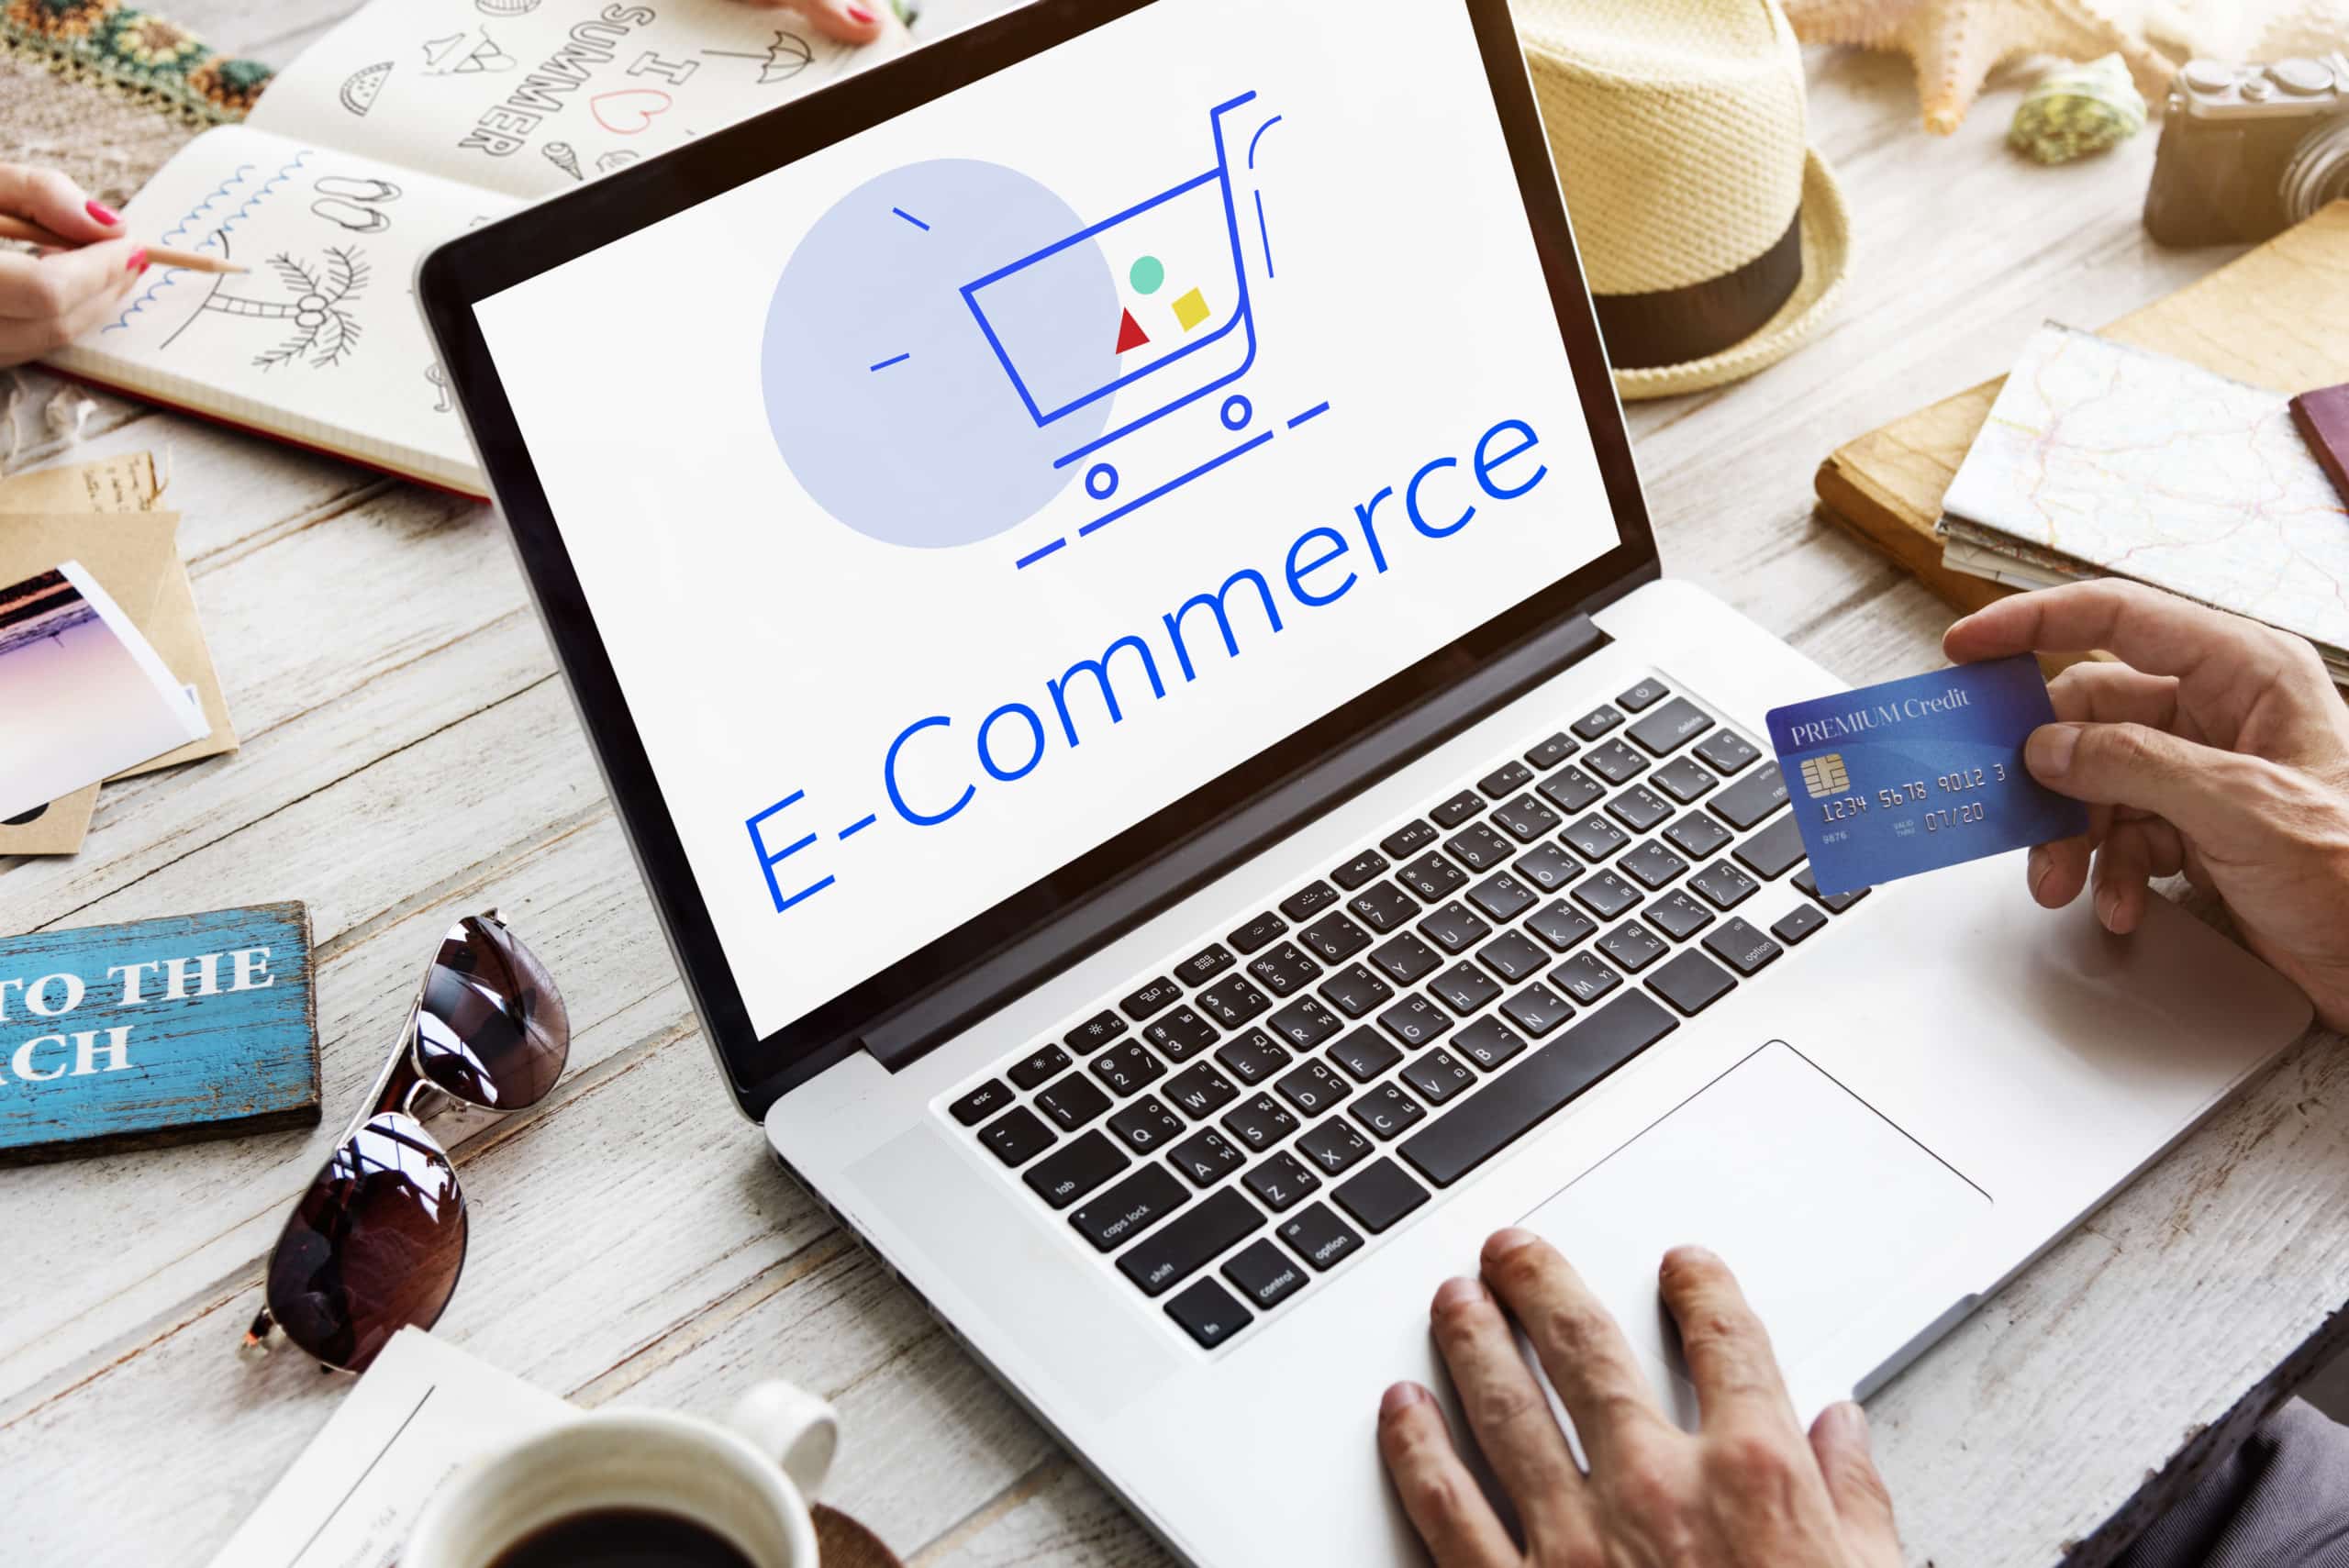 E-Commerce Operations